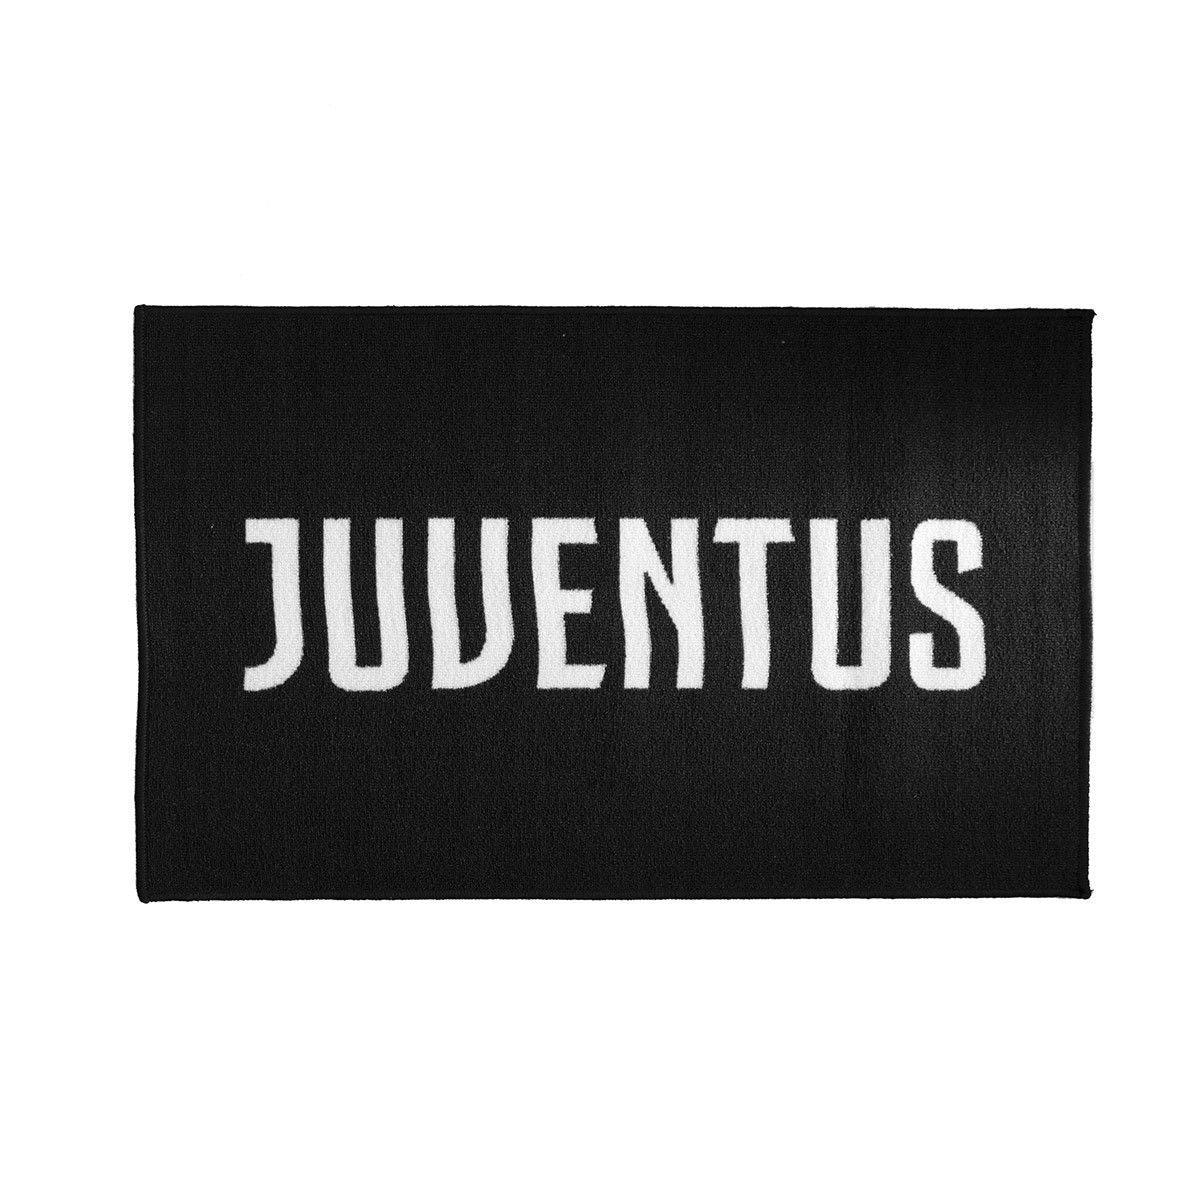 Tappeto F.C. Juventus Ufficiale rettangolare antiscivolo 70x110 cm D15 - Passarelli Biancheria